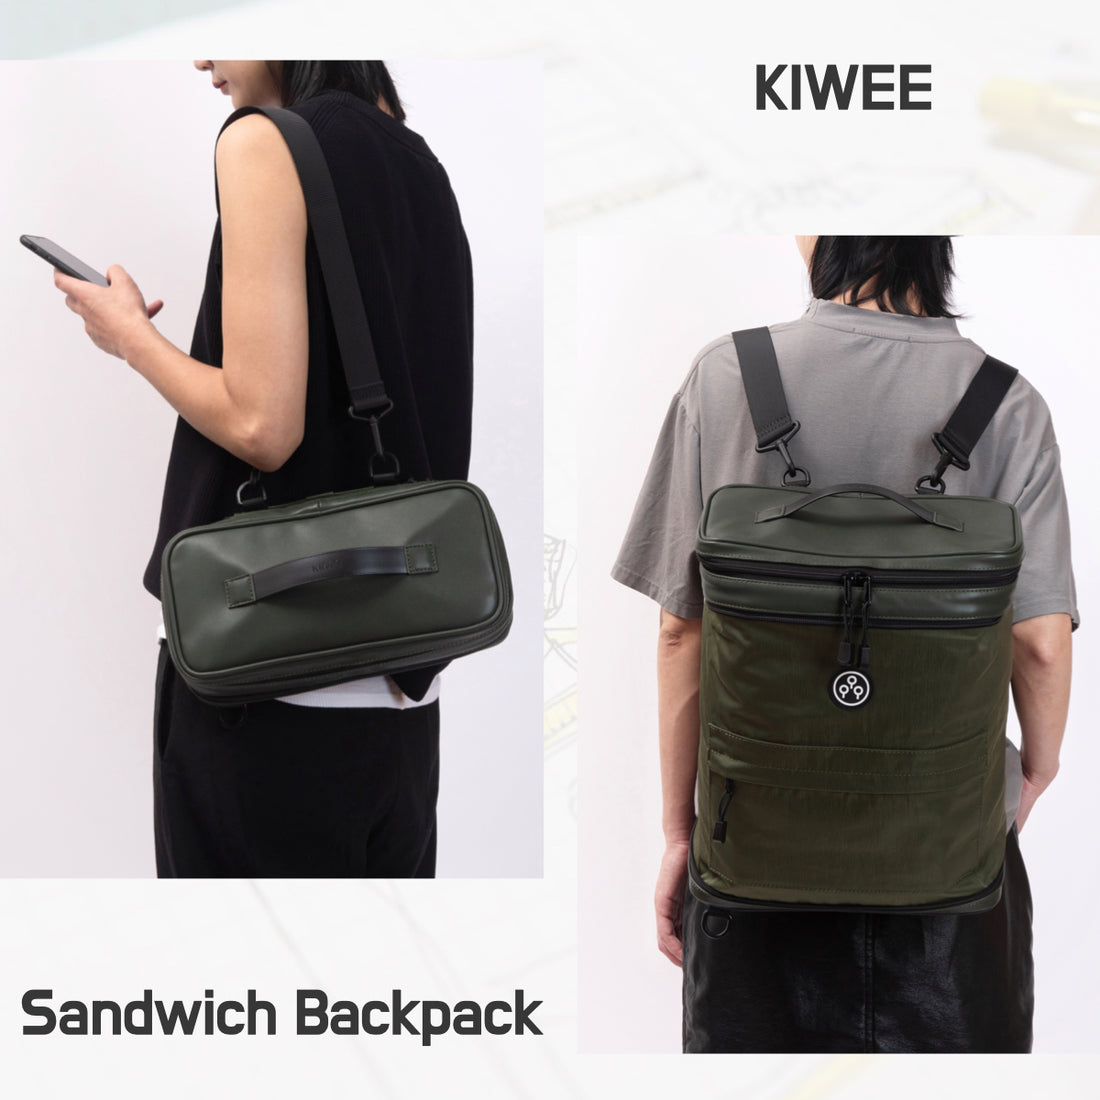 スリングバッグがバックパックに変形するスマートバッグ【KIWEE Sandwich Backpack】